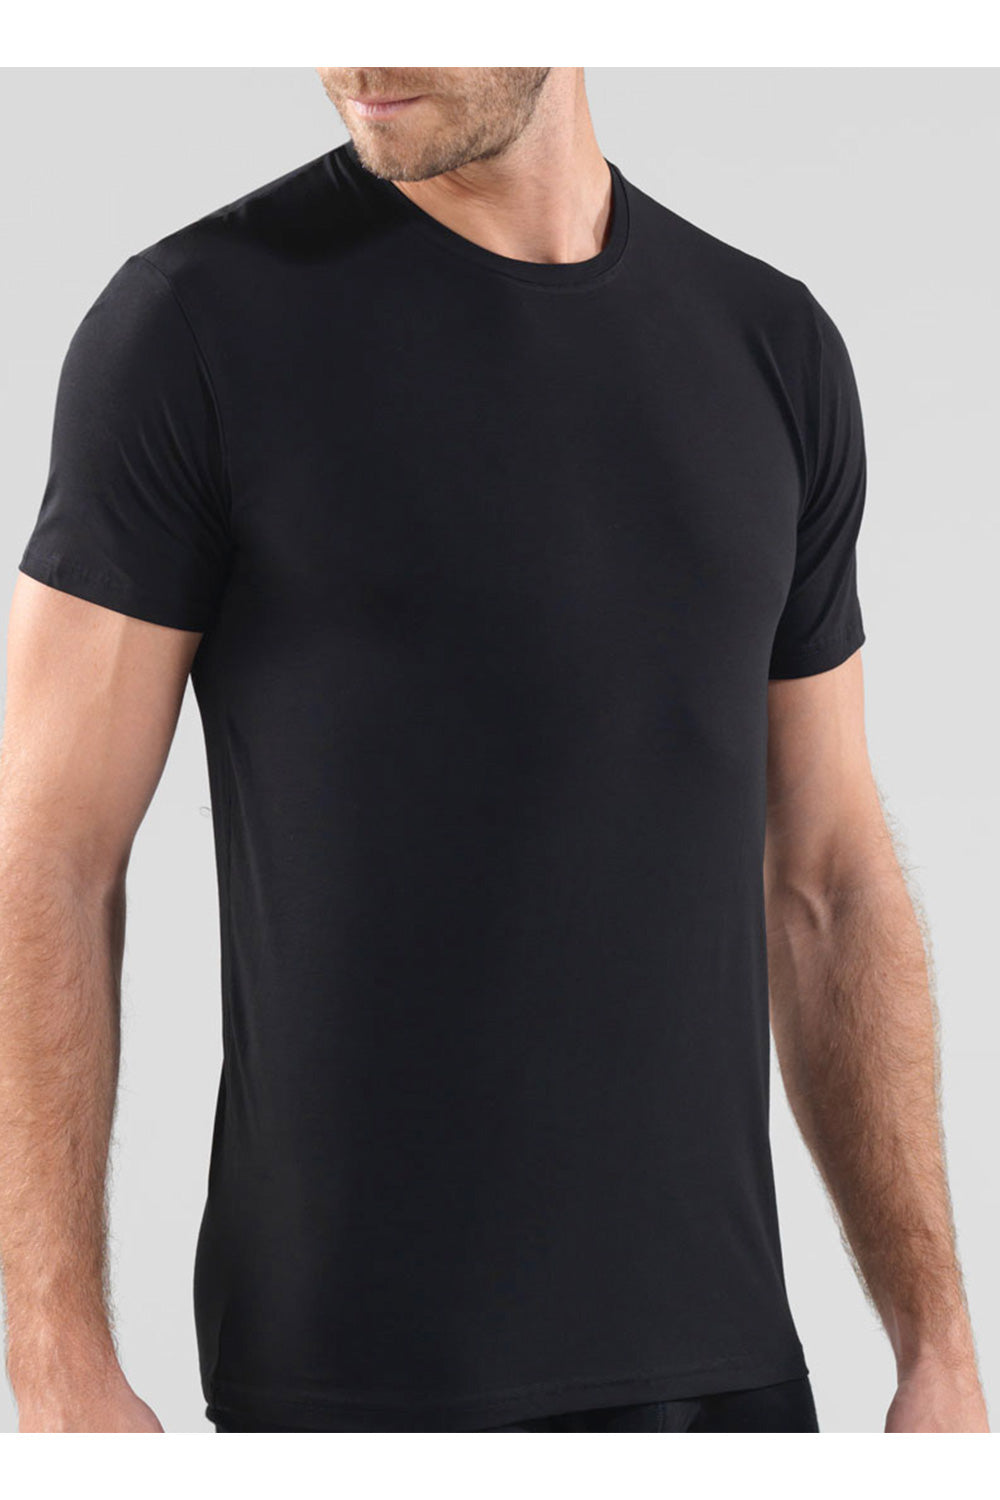 Blackspade Men's Aura T-Shirt - 9506